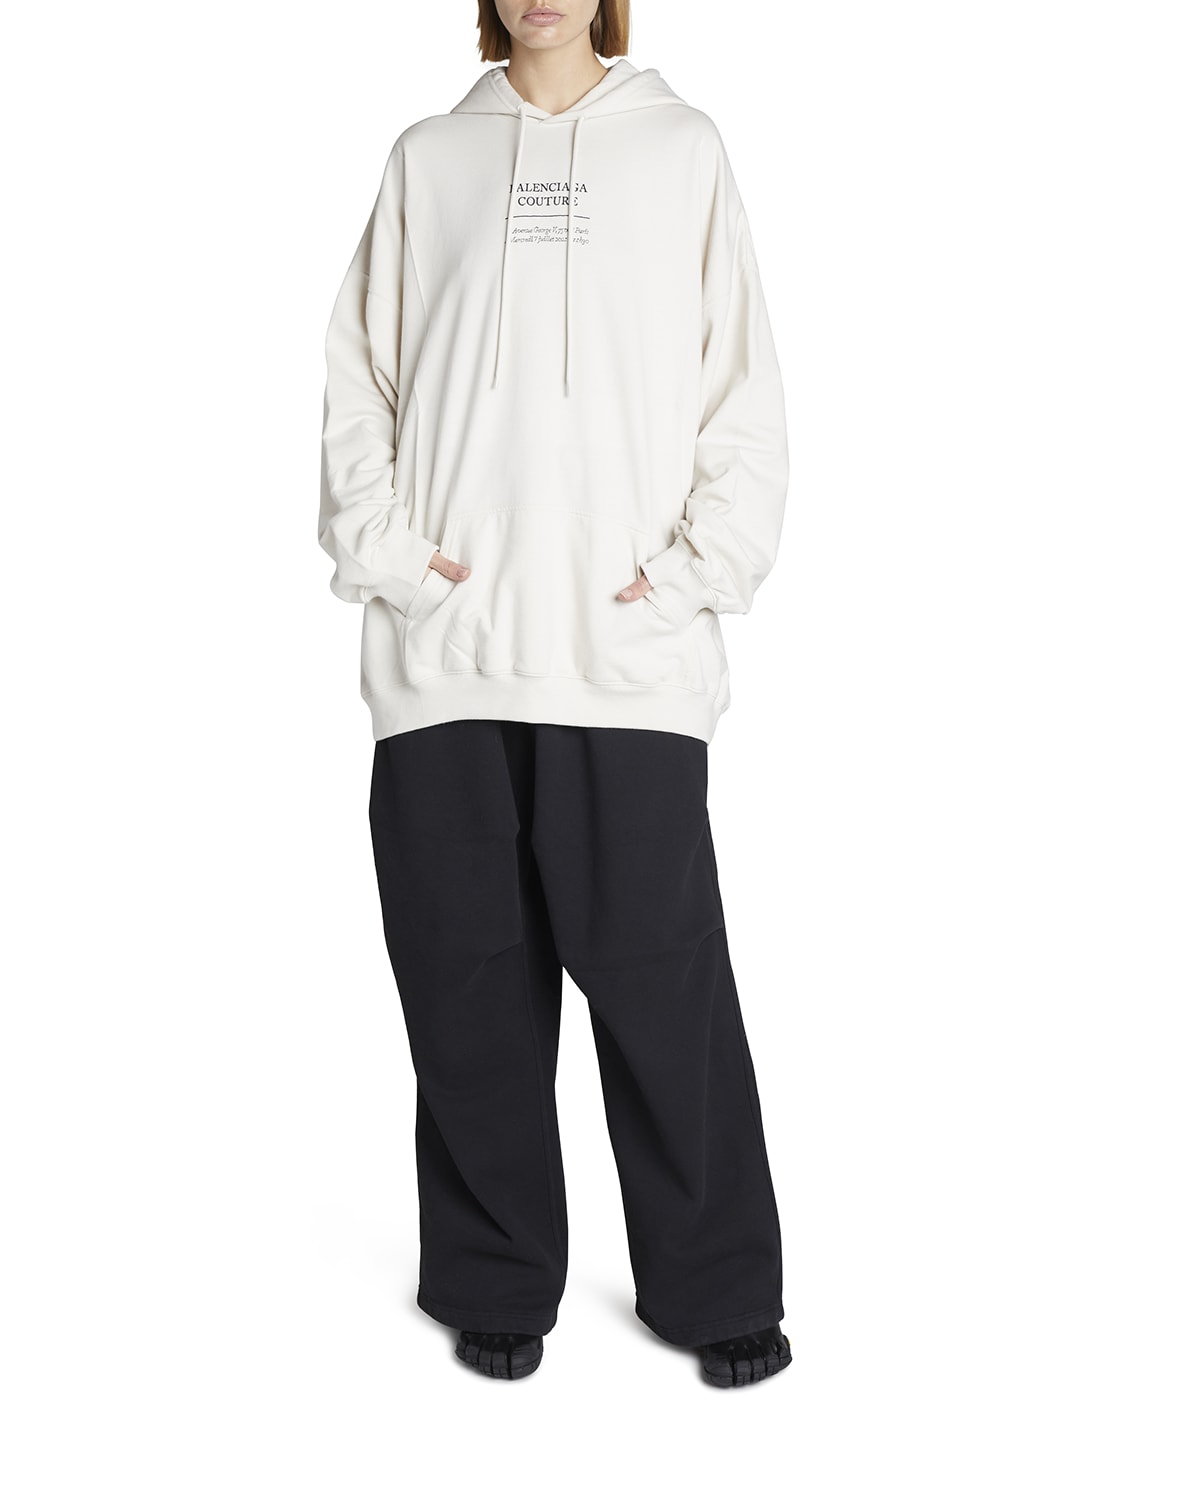 Balenciaga Sweatshirt | Neiman Marcus